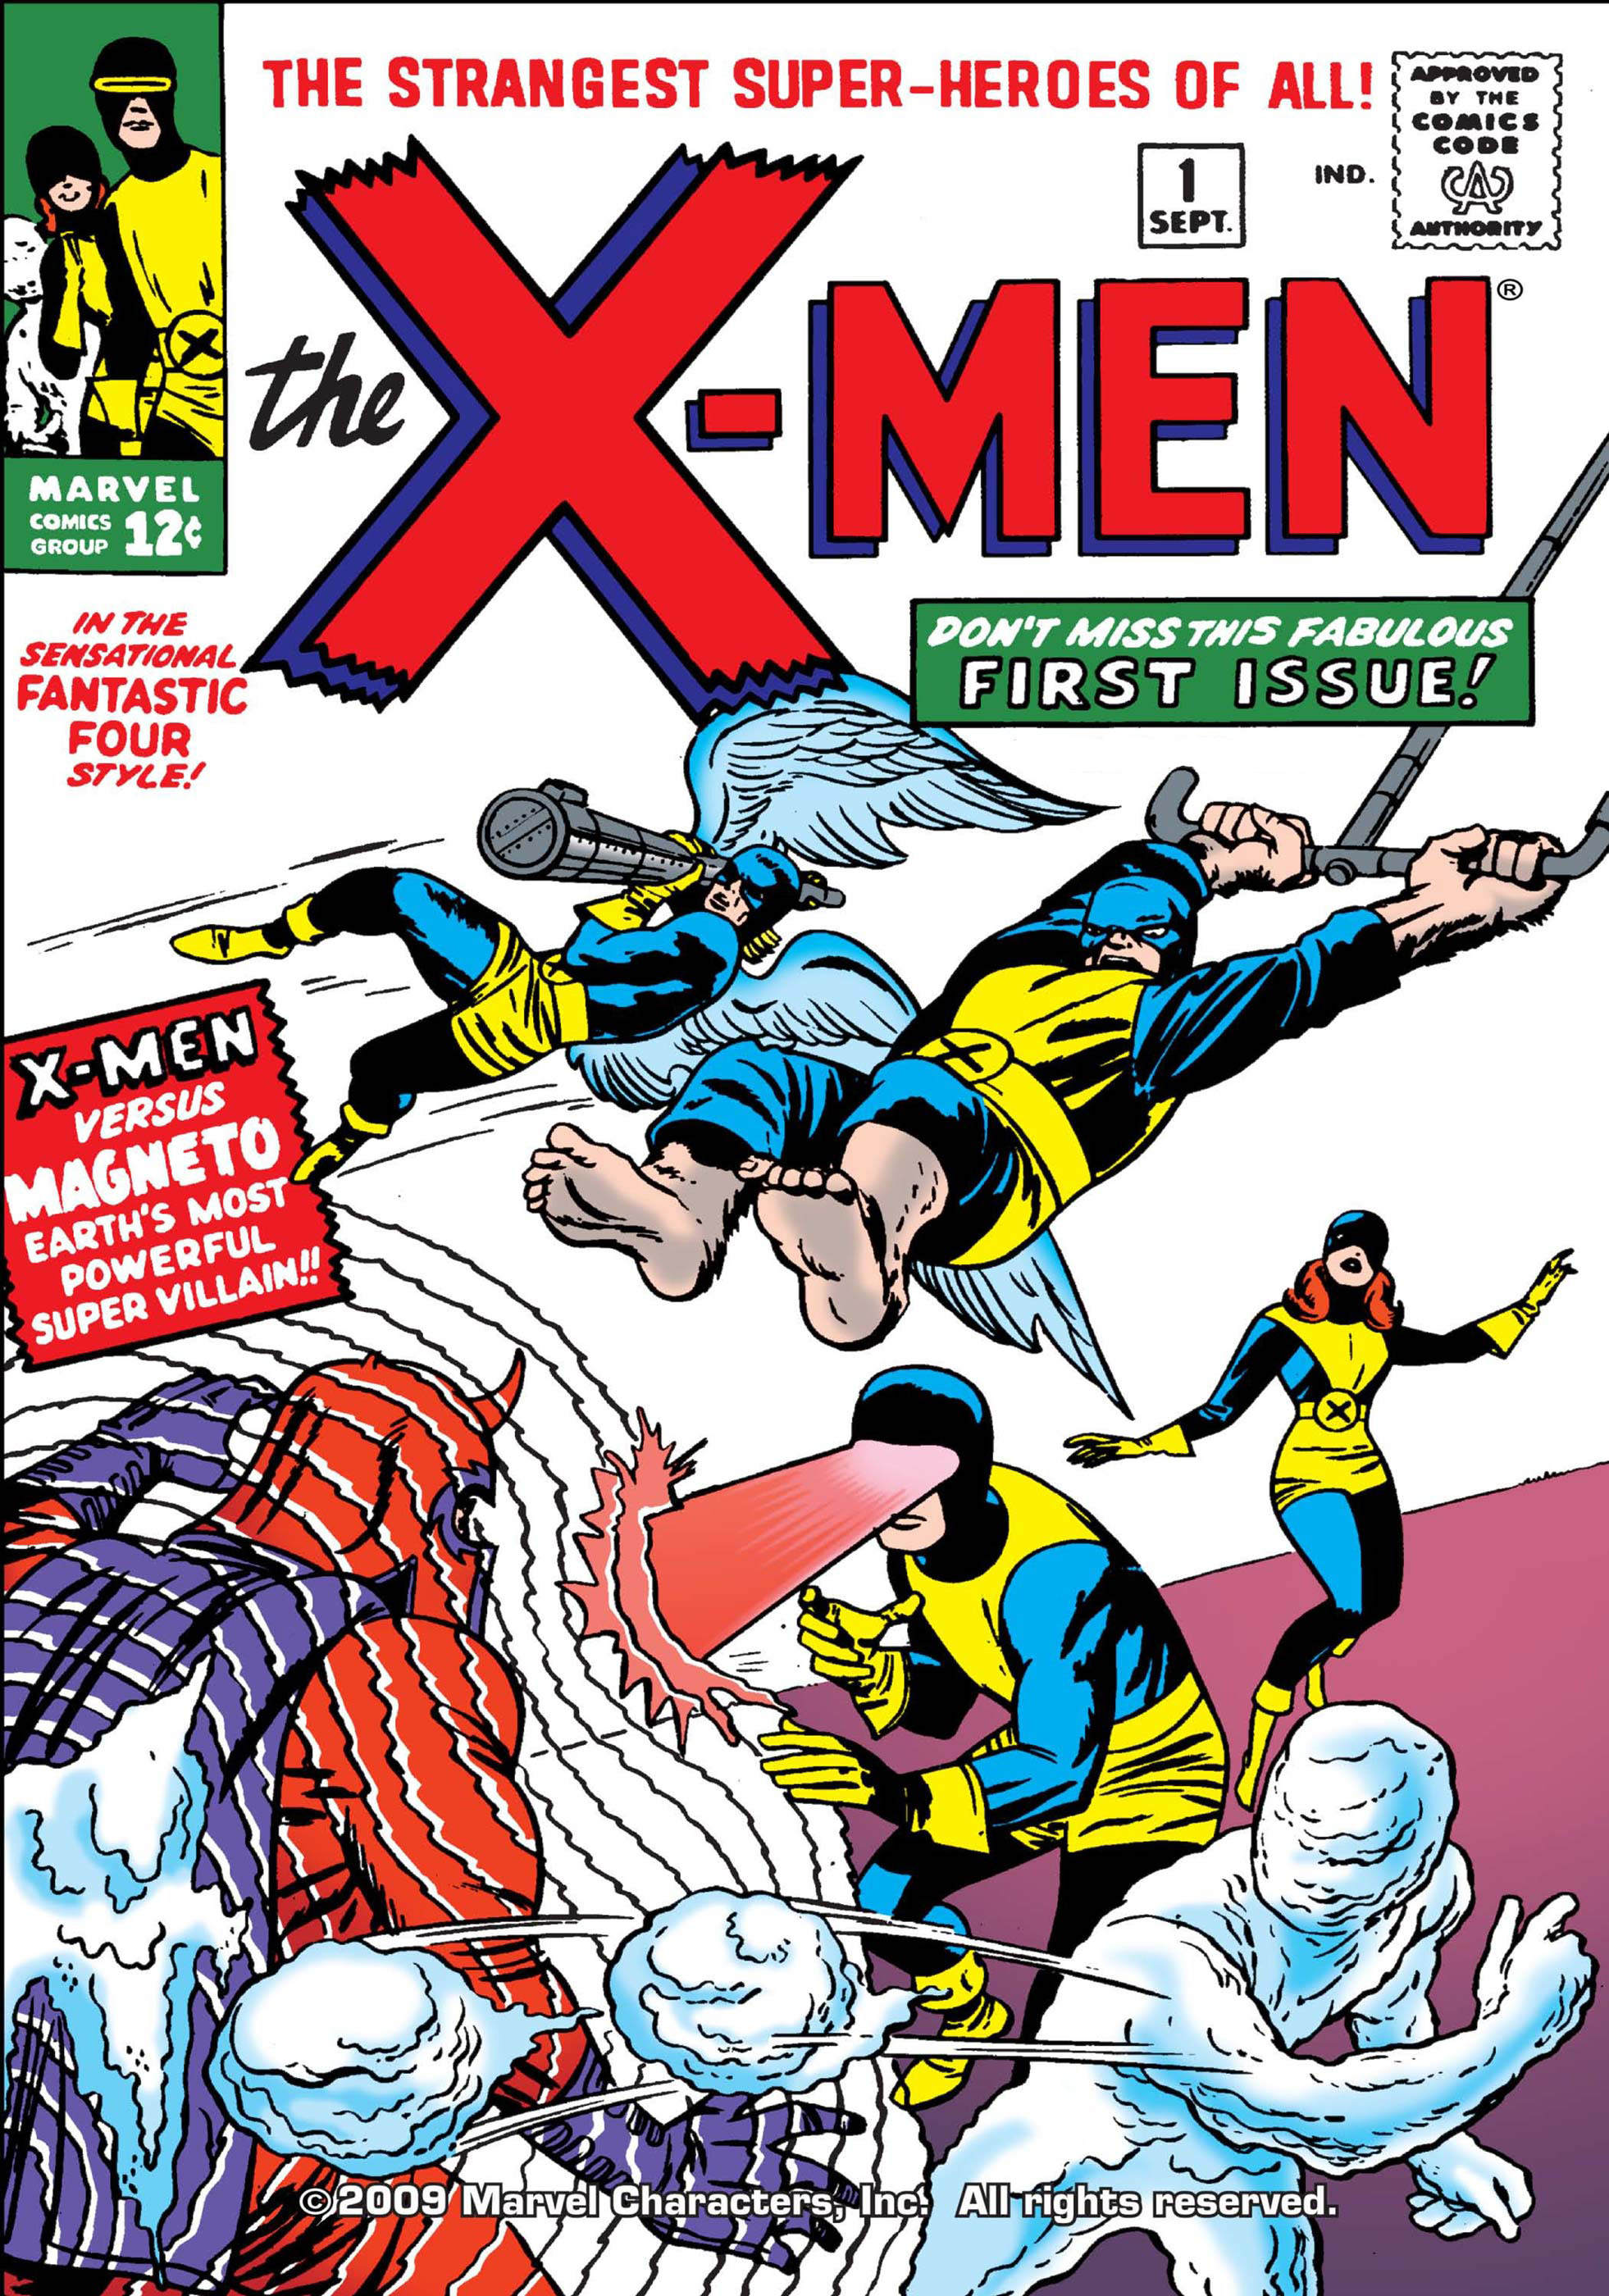 De cover voor X-Men #1